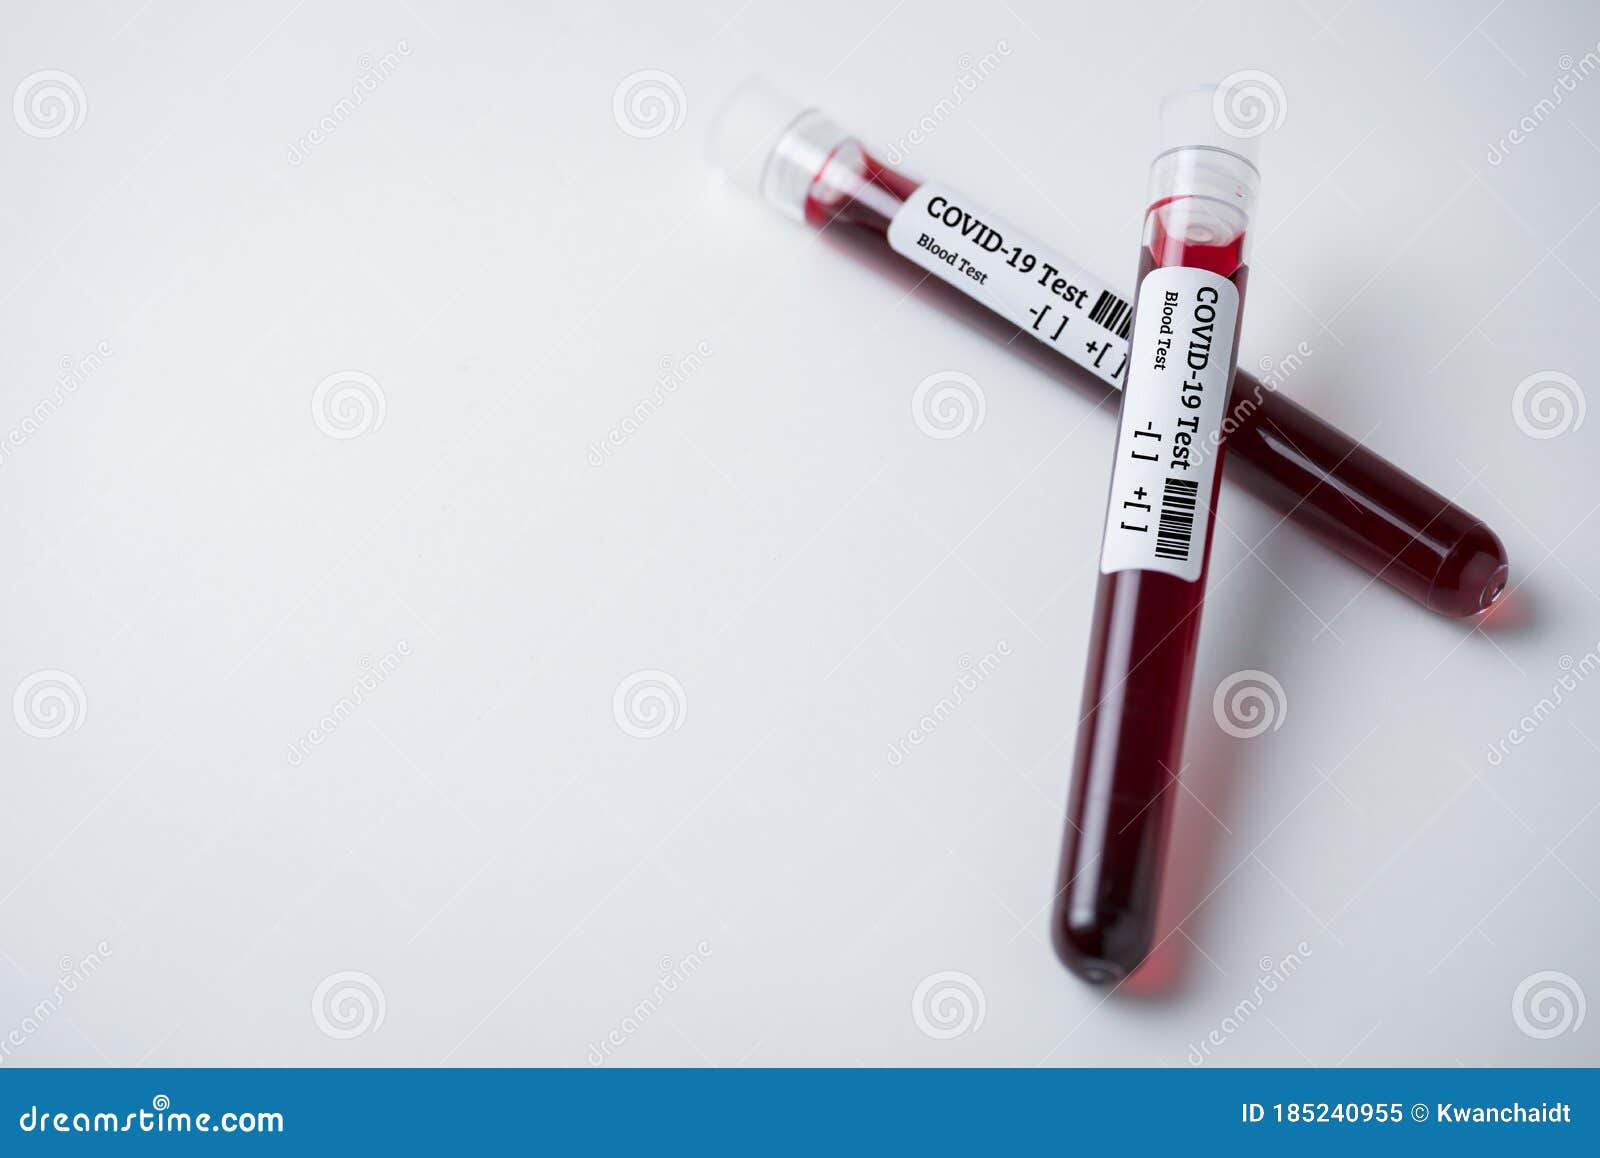 Mẫu máu là yếu tố quan trọng trong chẩn đoán và điều trị bệnh. Hãy xem bức ảnh liên quan đến mẫu máu để hiểu thêm về tầm quan trọng của kiểm tra máu đối với sức khỏe của bạn.